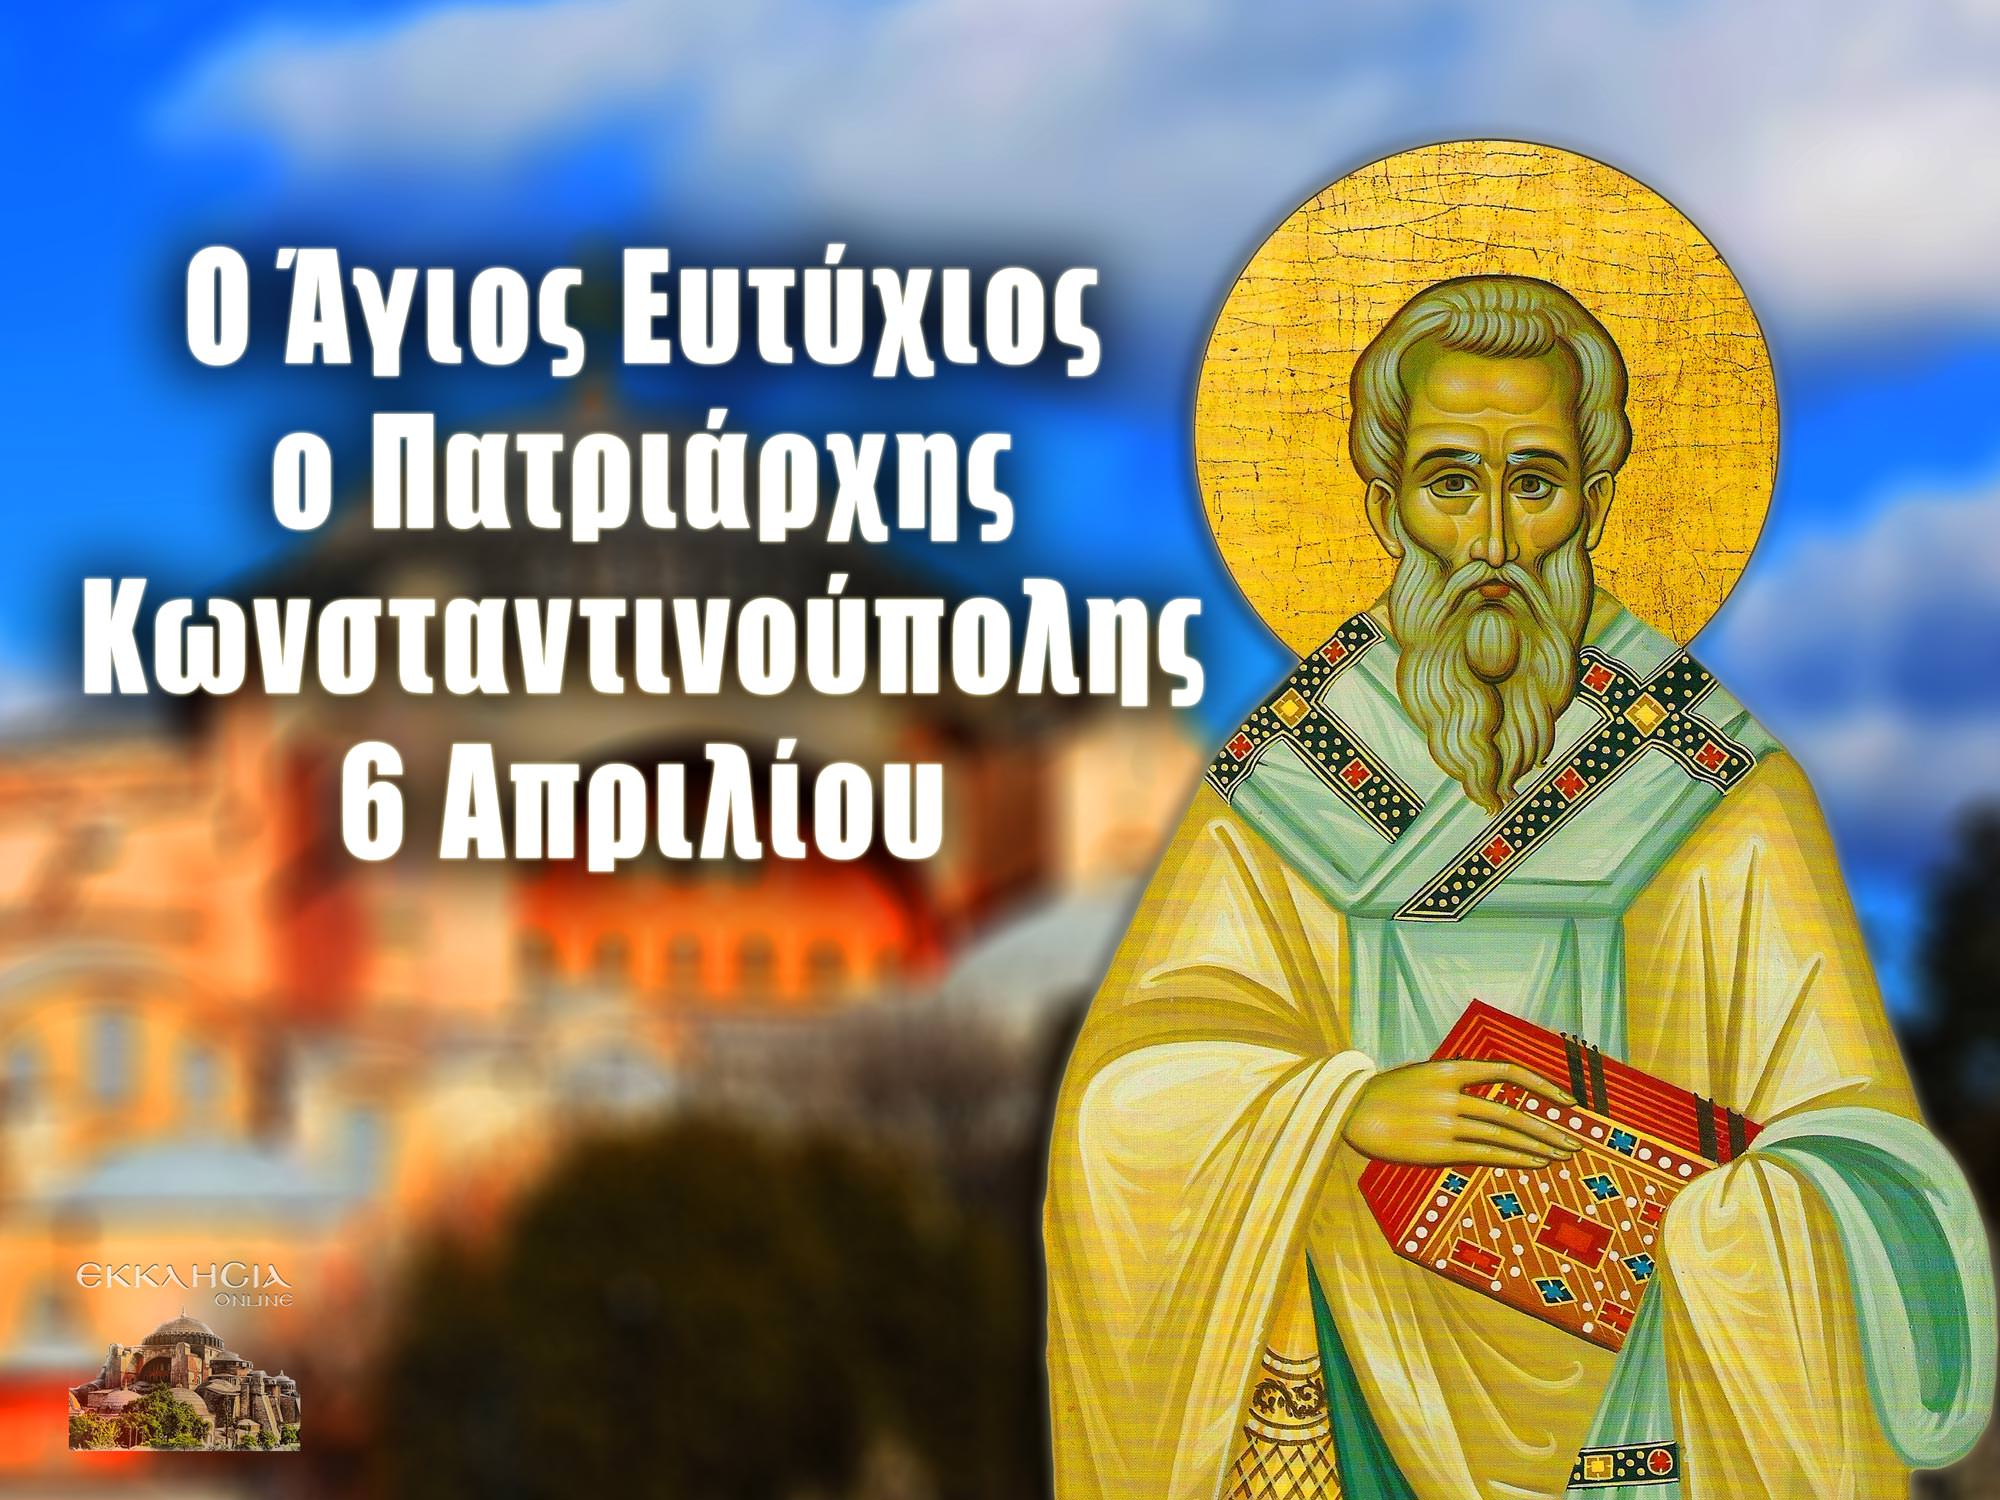 6 Απριλίου - Γιορτή σήμερα: Άγιος Ευτύχιος Πατριάρχης Κωνσταντινούπολης -  ΕΚΚΛΗΣΙΑ ONLINE